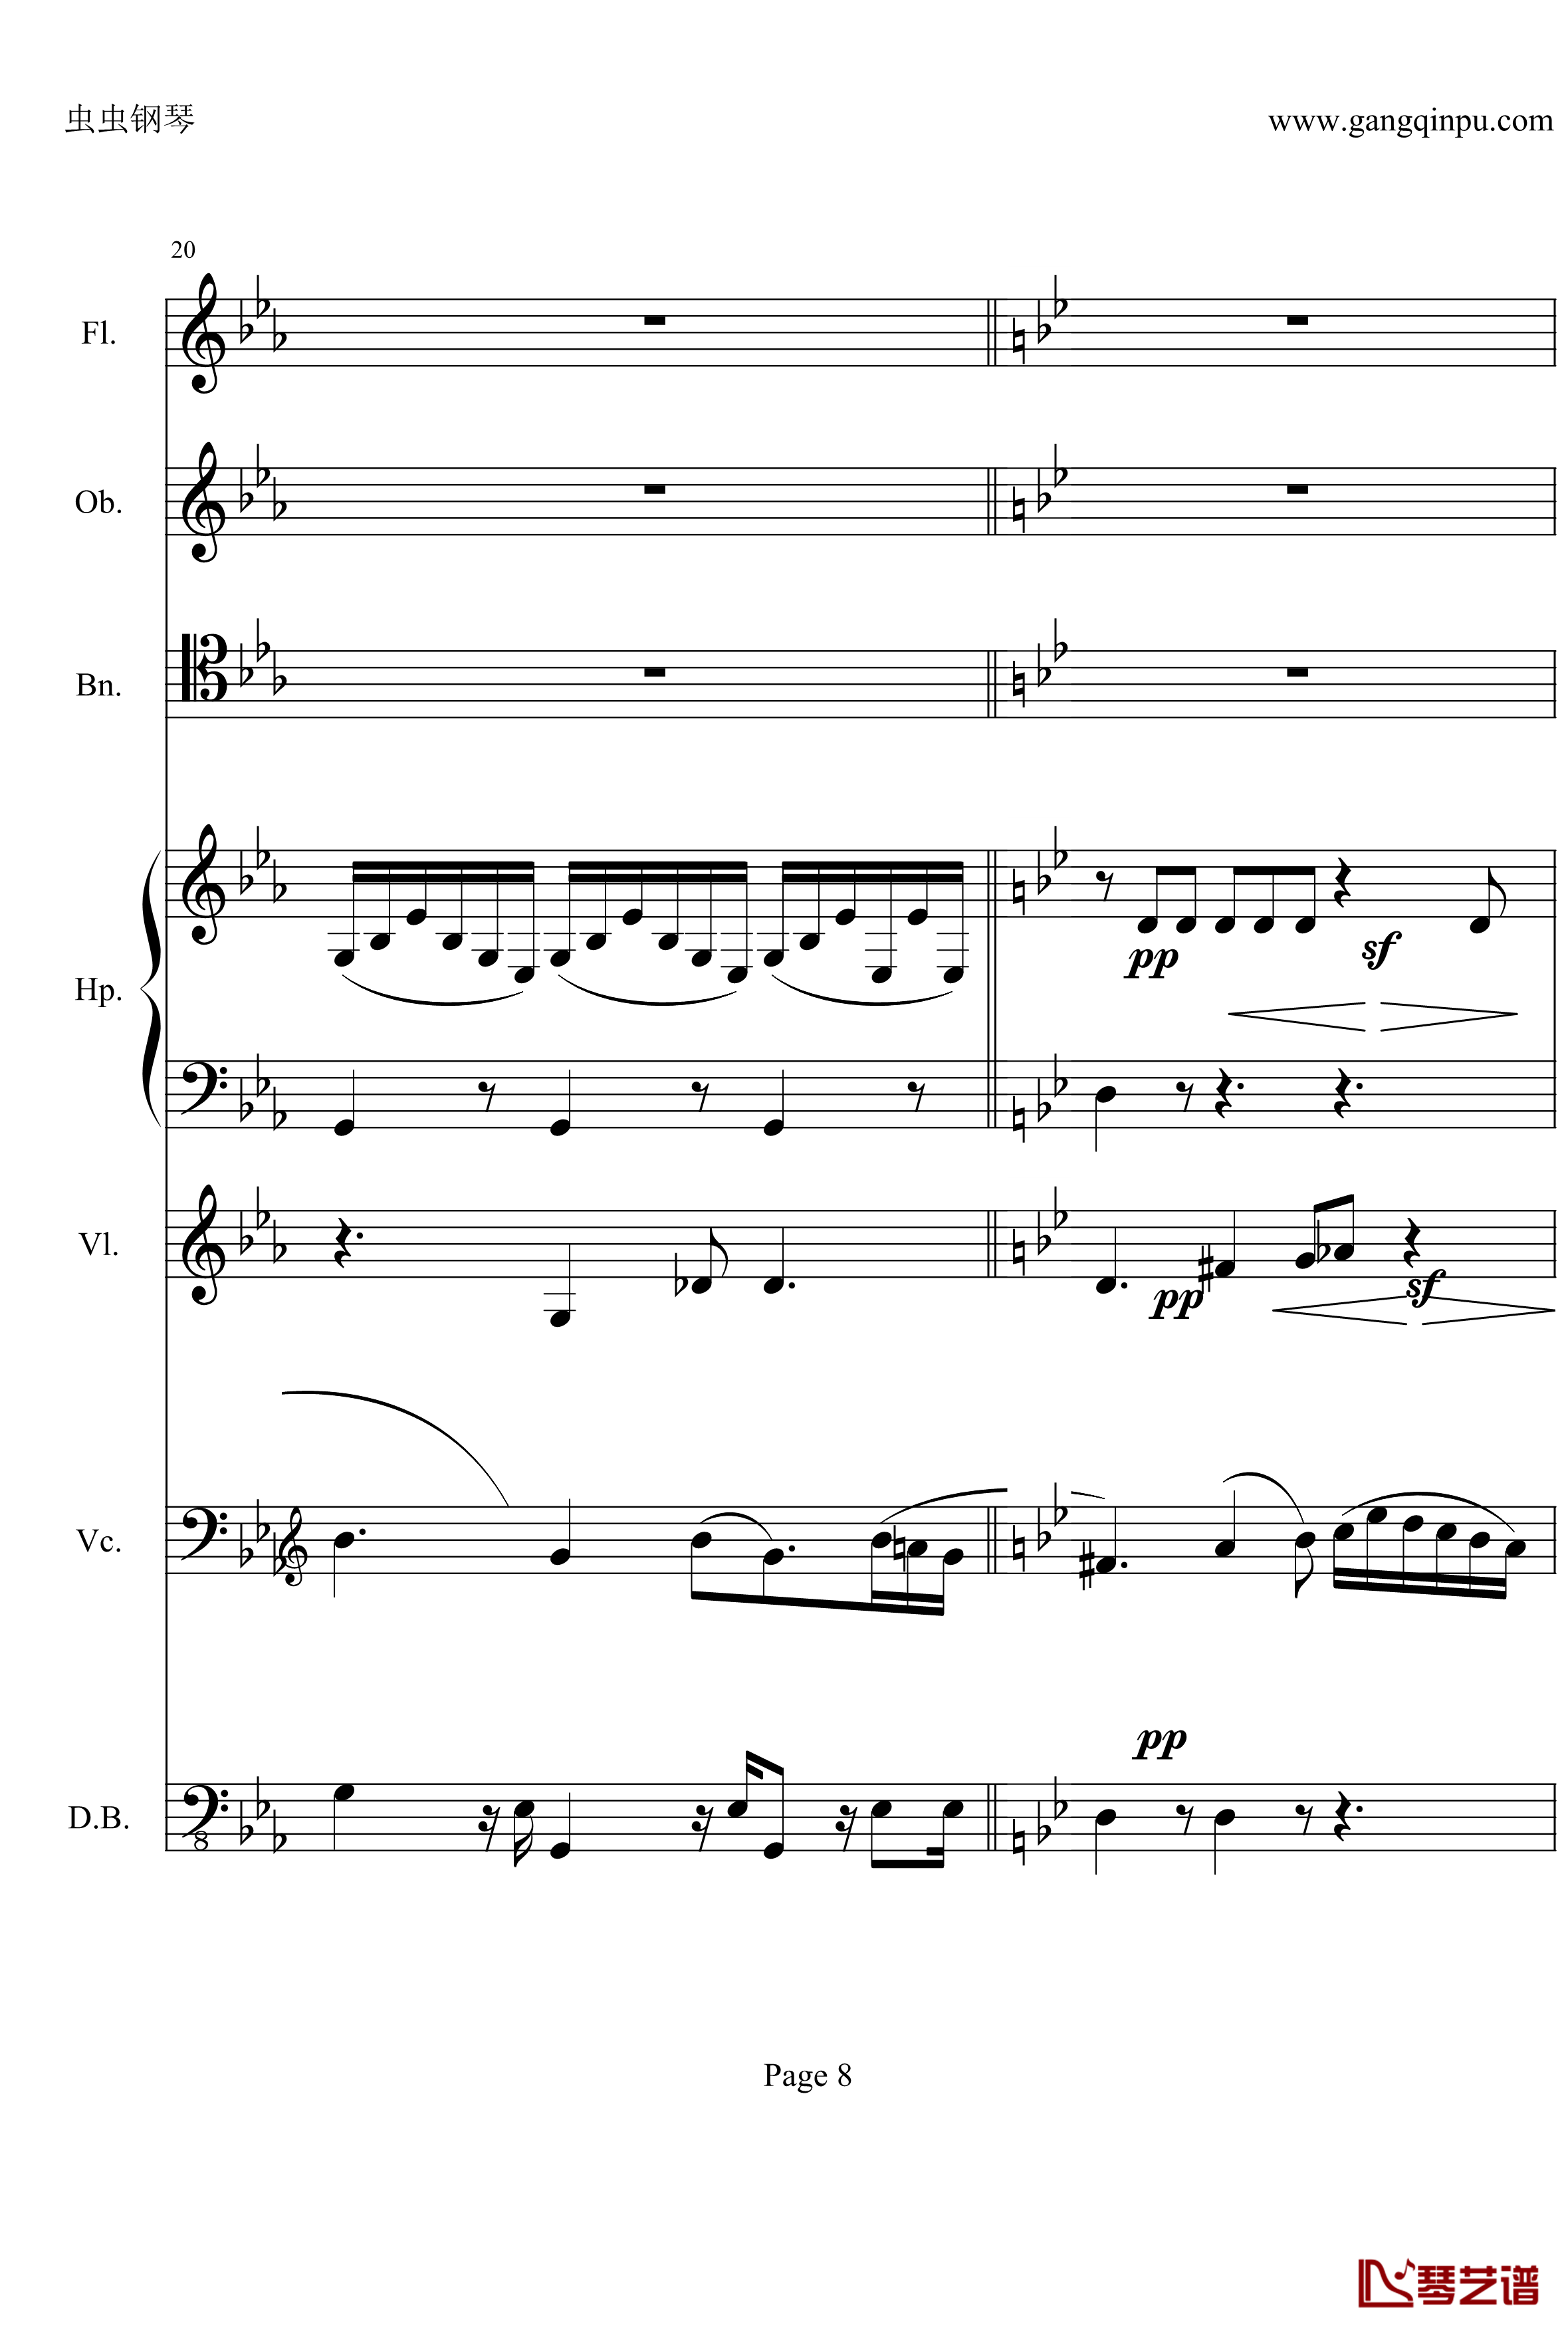 奏鸣曲之交响钢琴谱-第25首-Ⅱ-贝多芬-beethoven8